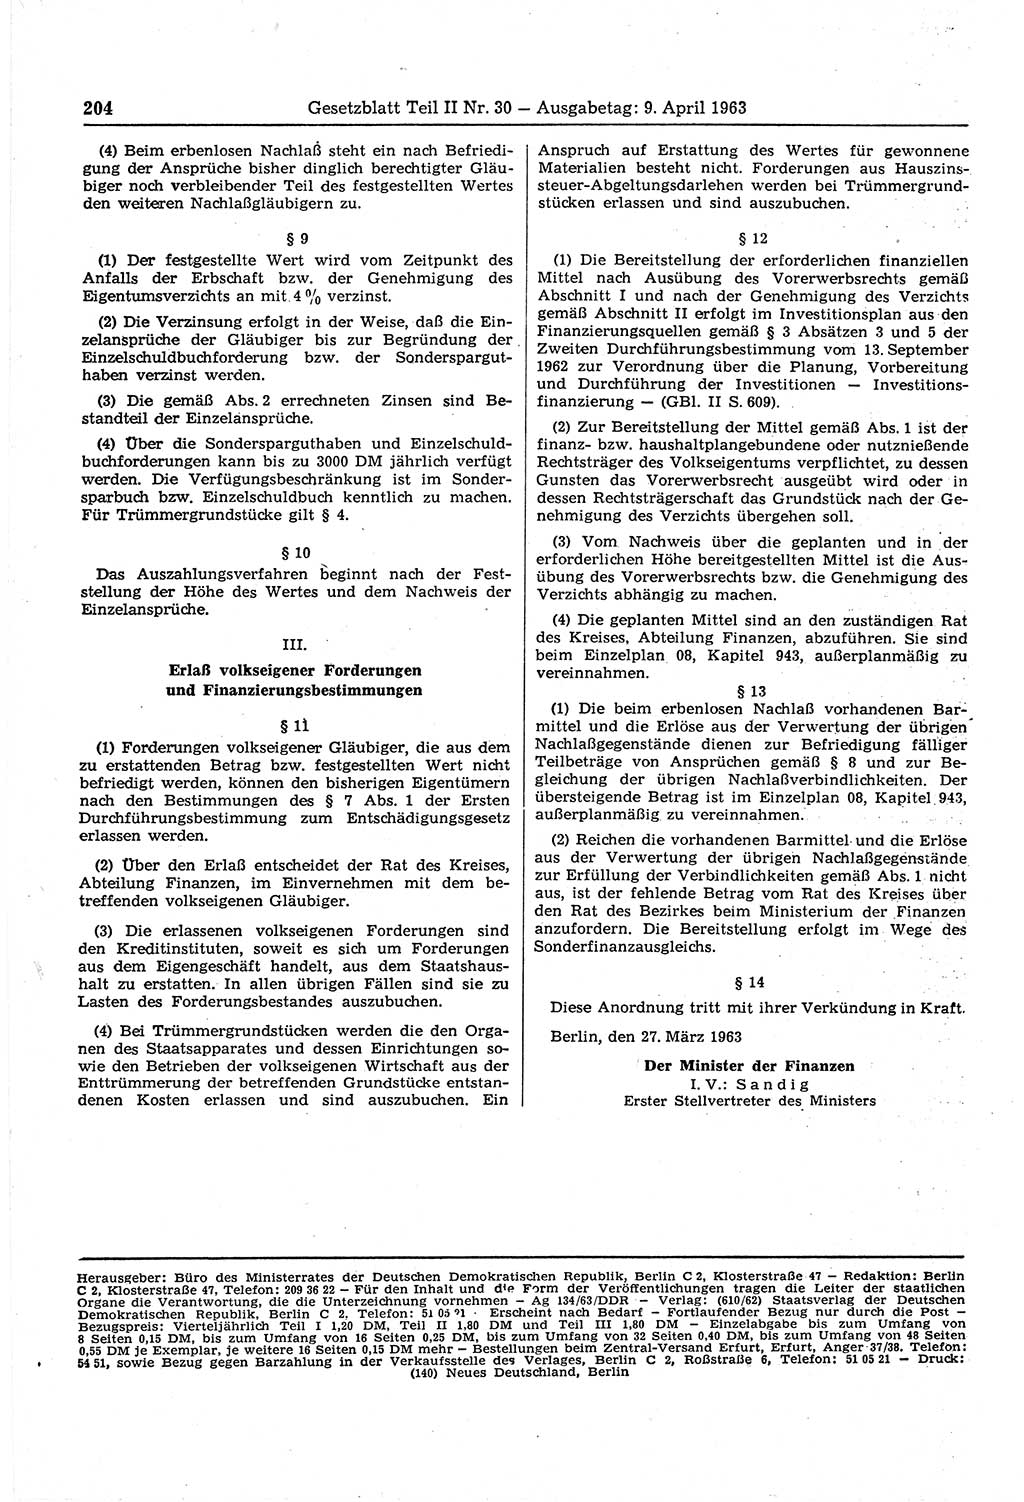 Gesetzblatt (GBl.) der Deutschen Demokratischen Republik (DDR) Teil ⅠⅠ 1963, Seite 204 (GBl. DDR ⅠⅠ 1963, S. 204)